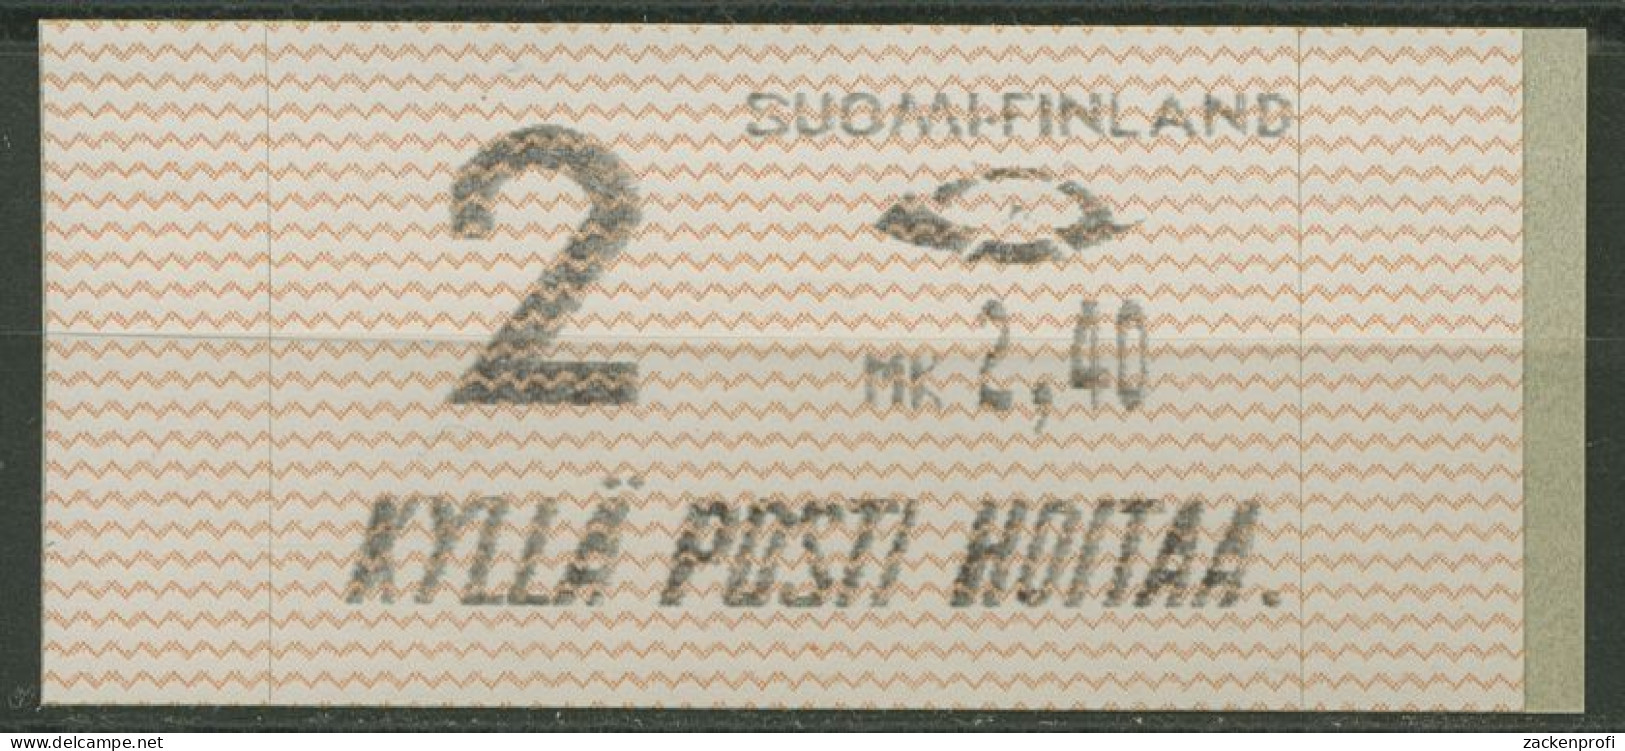 Finnland Automatenmarken 1991 MK 2,40 Einzelwert, ATM 10.1 Z2 Postfrisch - Machine Labels [ATM]